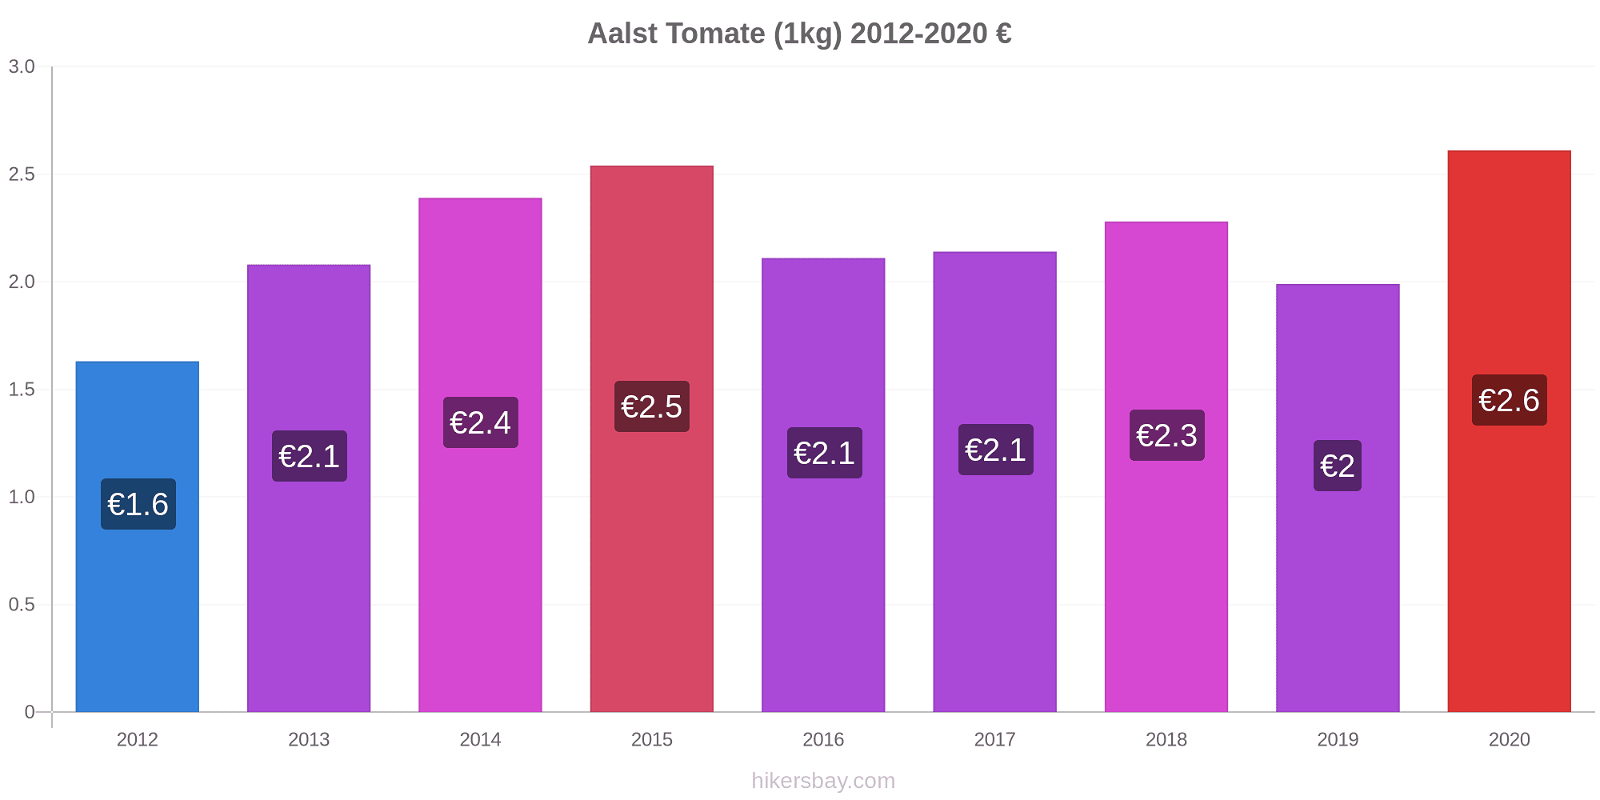 Aalst variação de preço Tomate (1kg) hikersbay.com